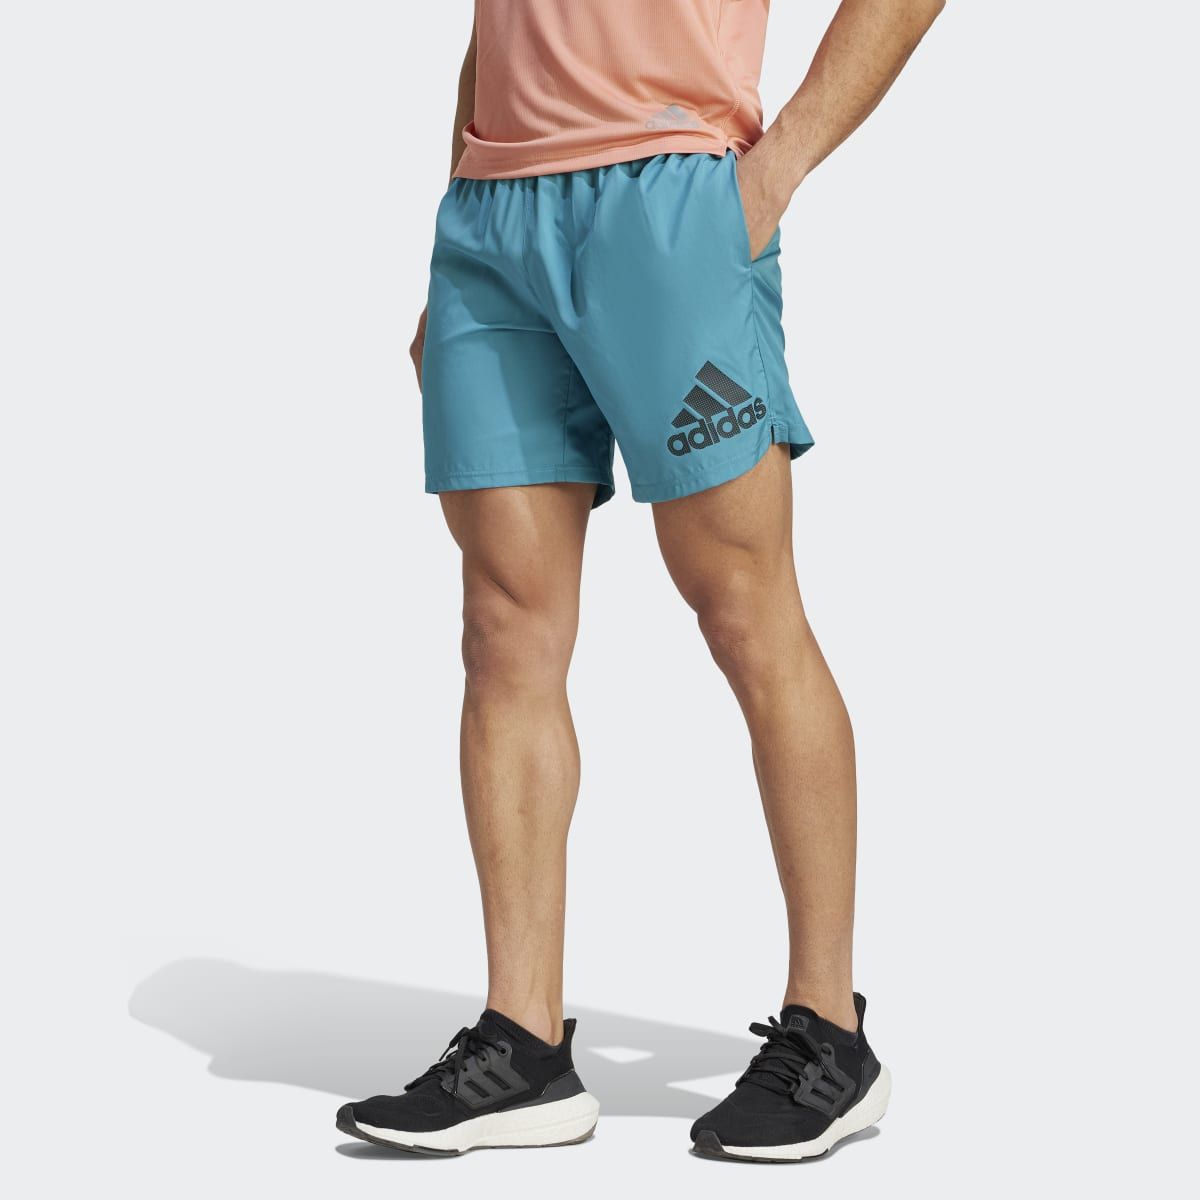 Adidas Shorts deportivos hombre - Compra online a los mejores